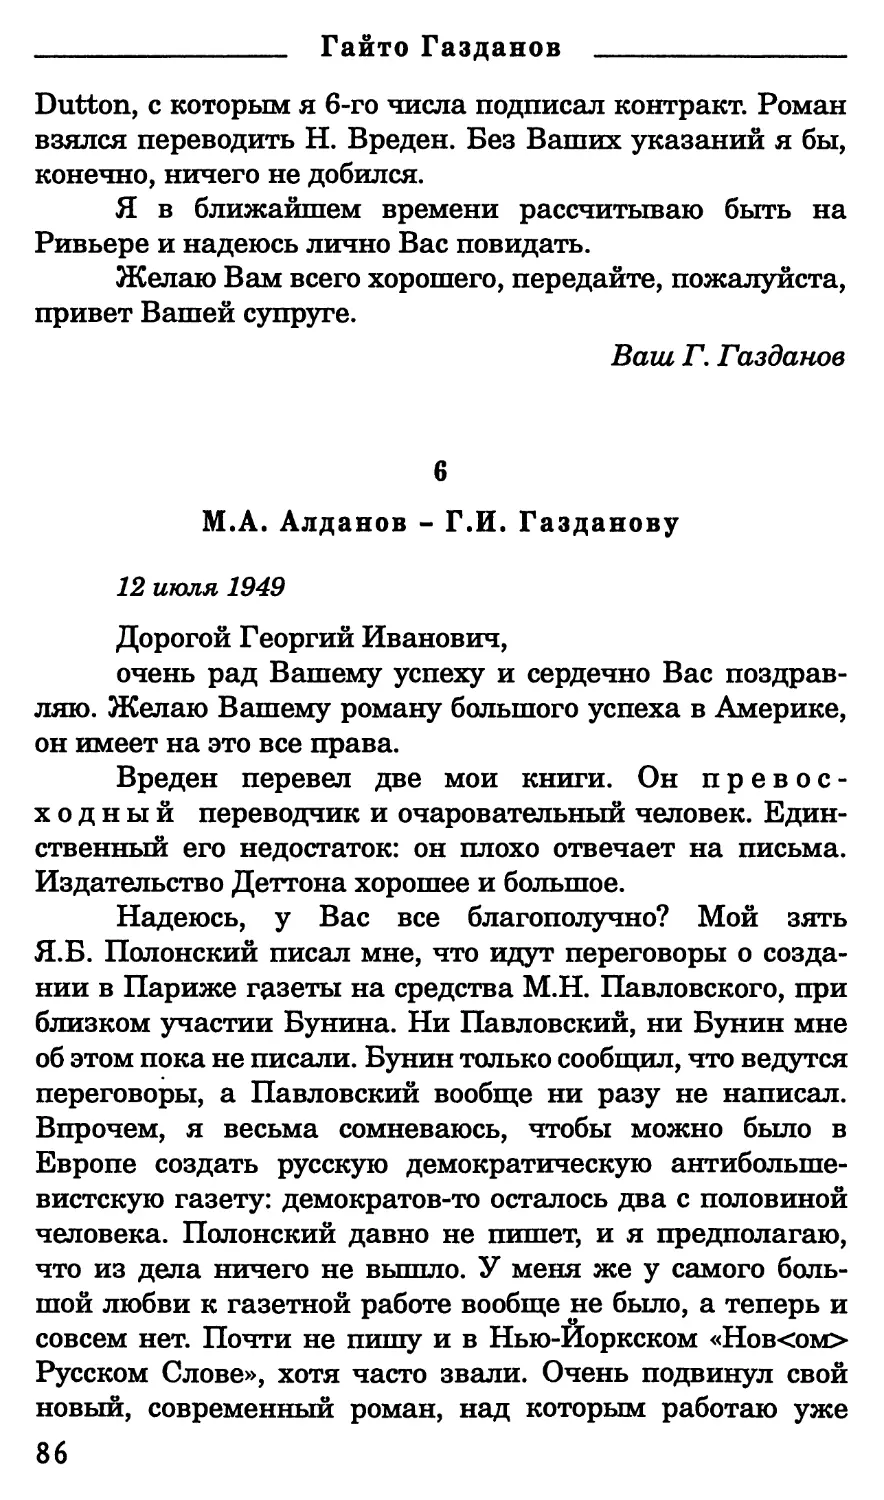 6. М.А. Алданов - Г.И. Газданову. 12 июля 1949 г.